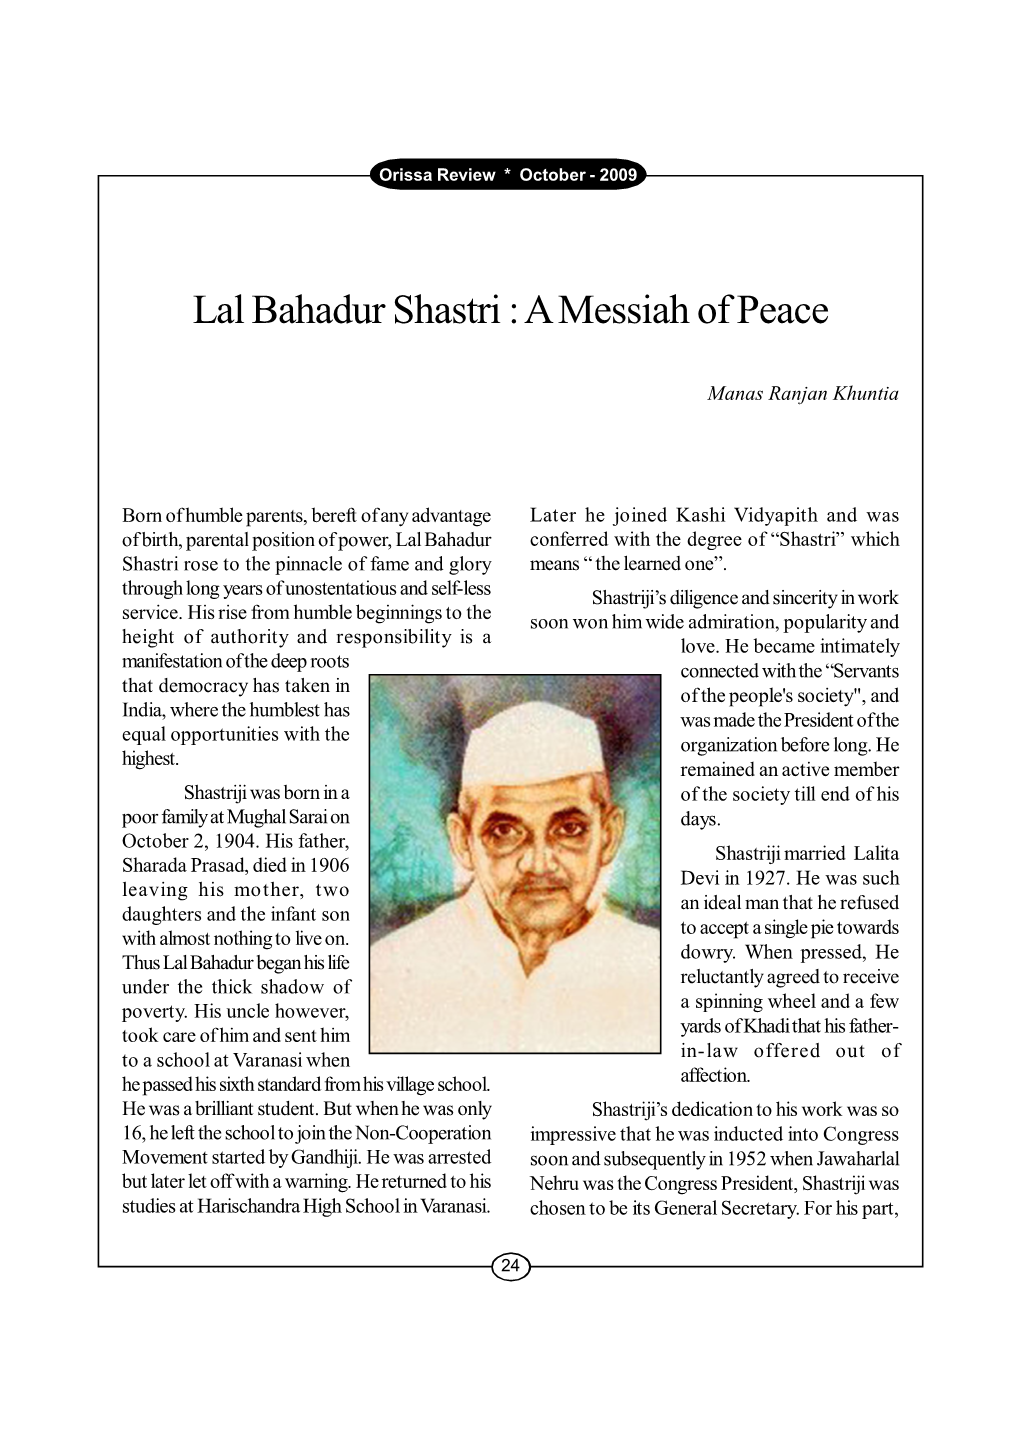 Lal Bahadur Shastri : a Messiah of Peace